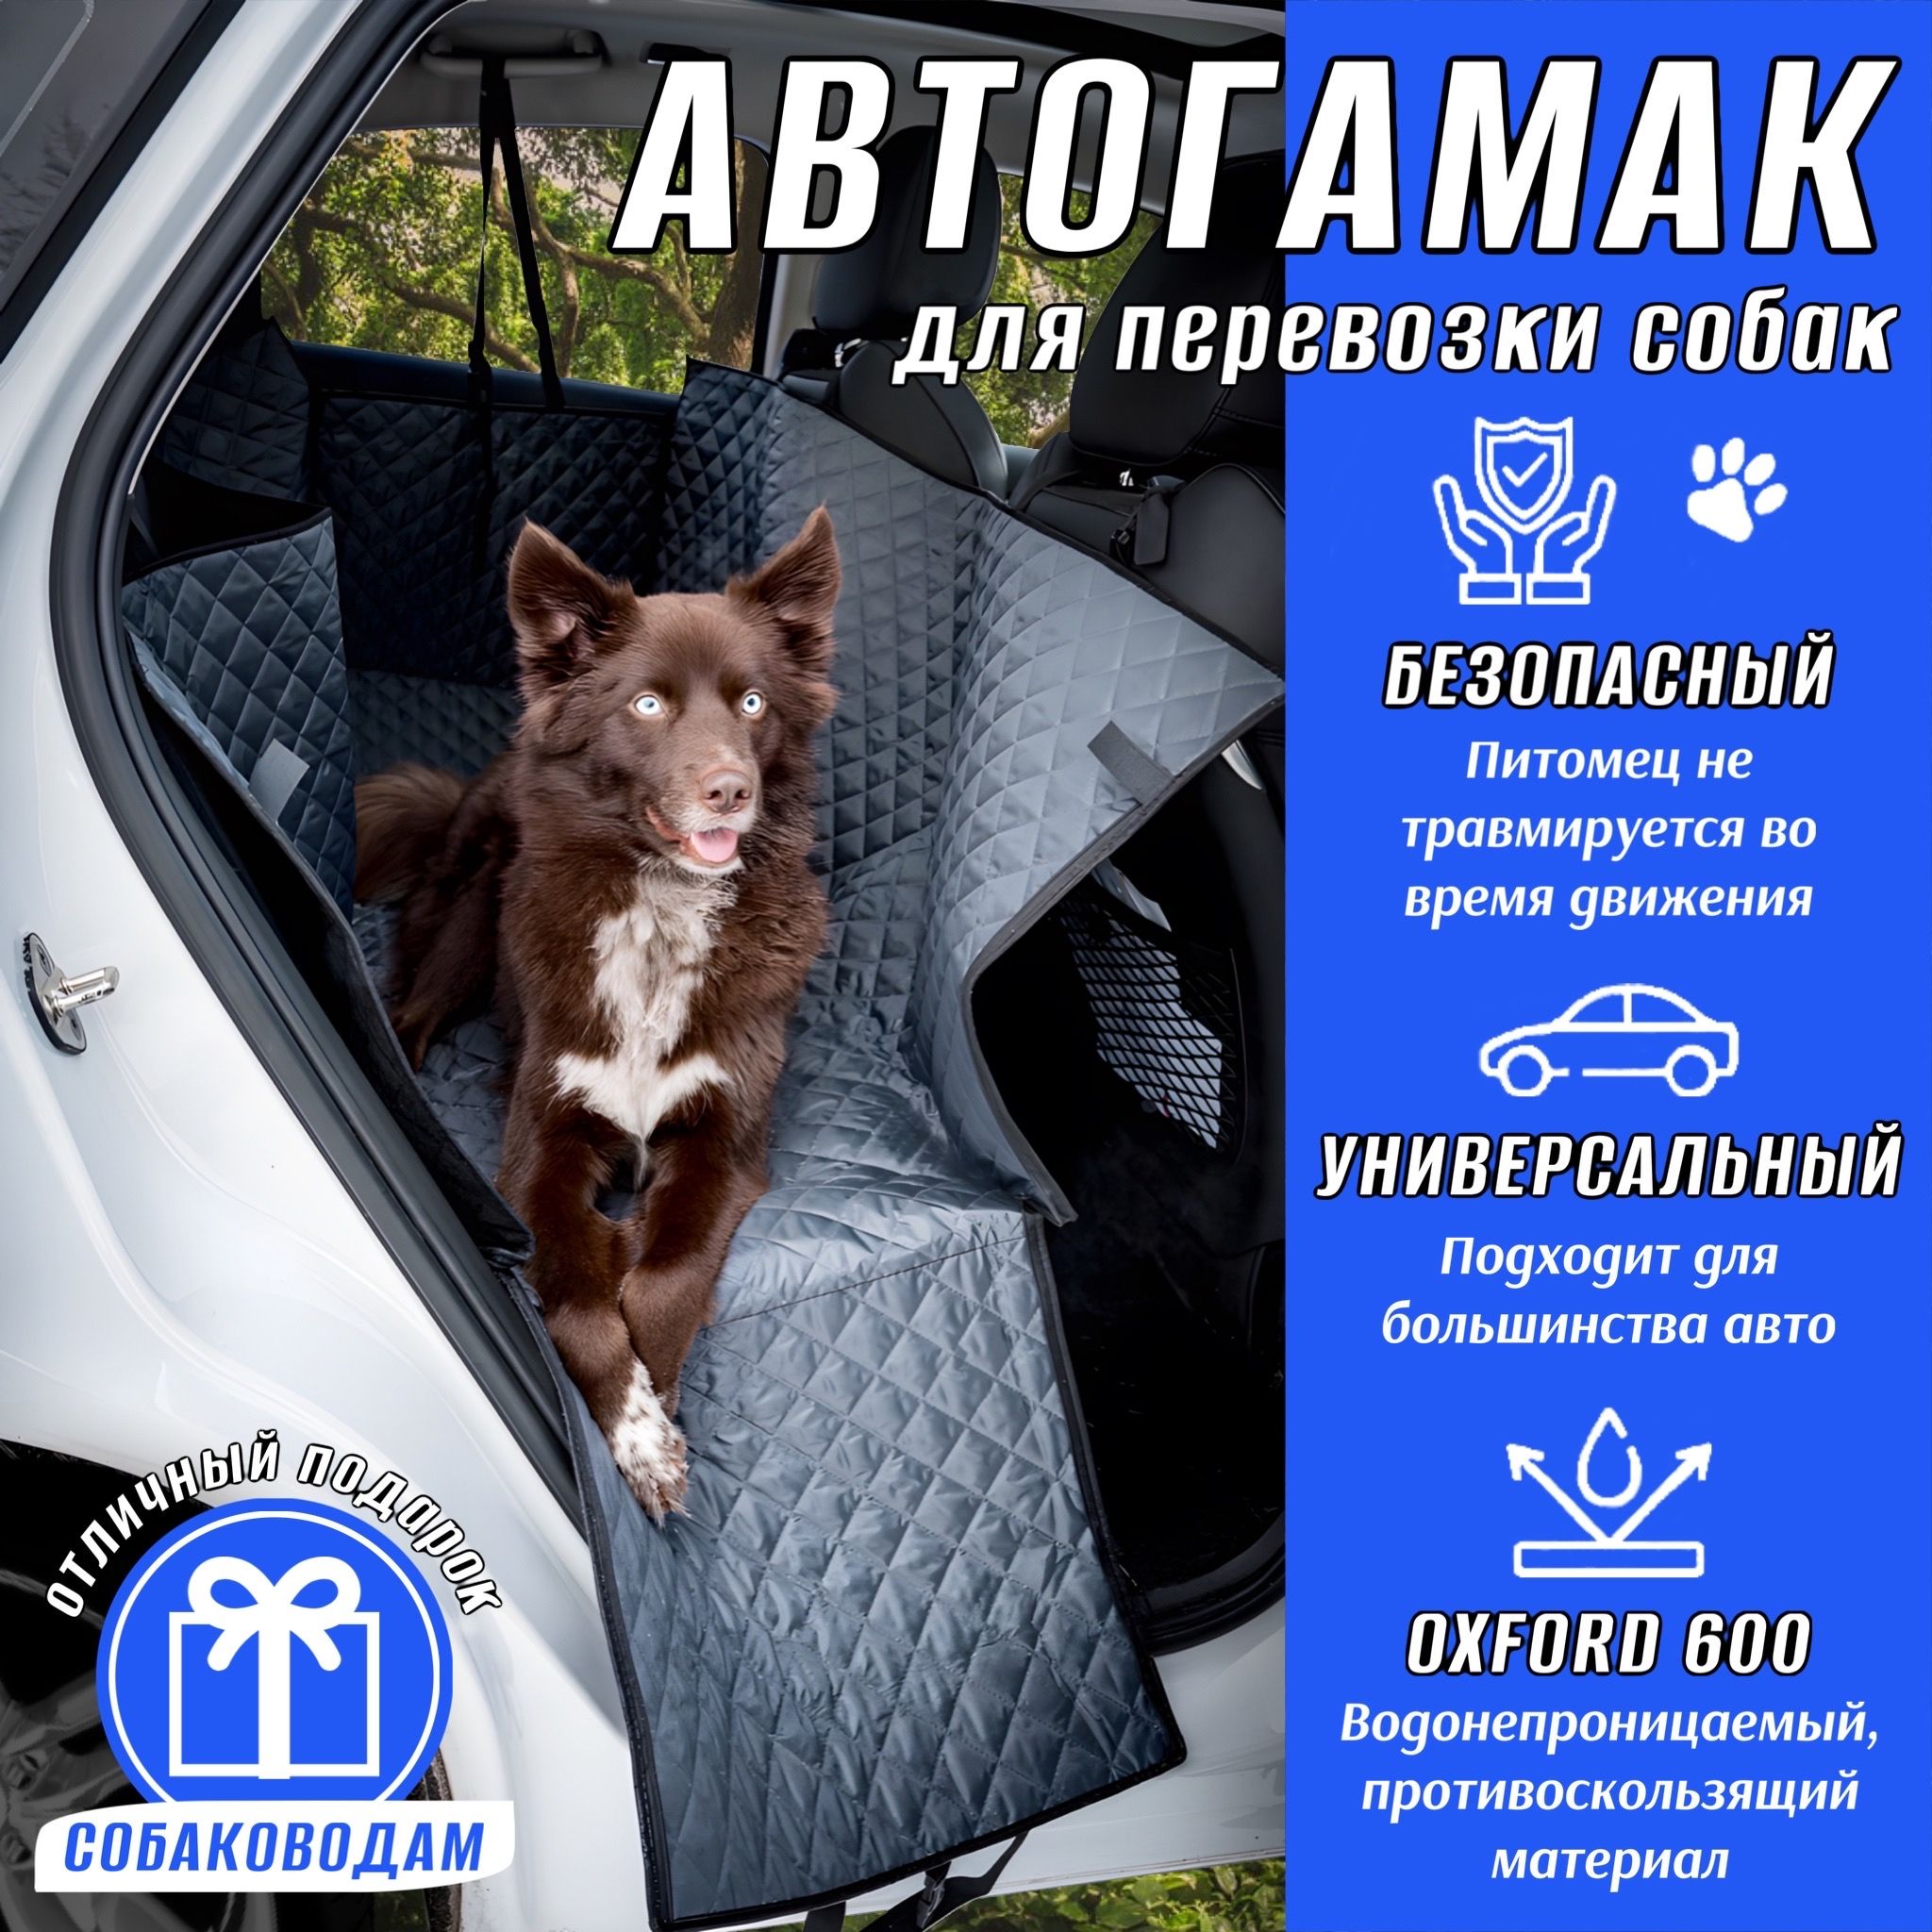 Автогамак для животных Стандарт автогамак15СТ - купить по выгодным ценам в  интернет-магазине OZON (1083195385)